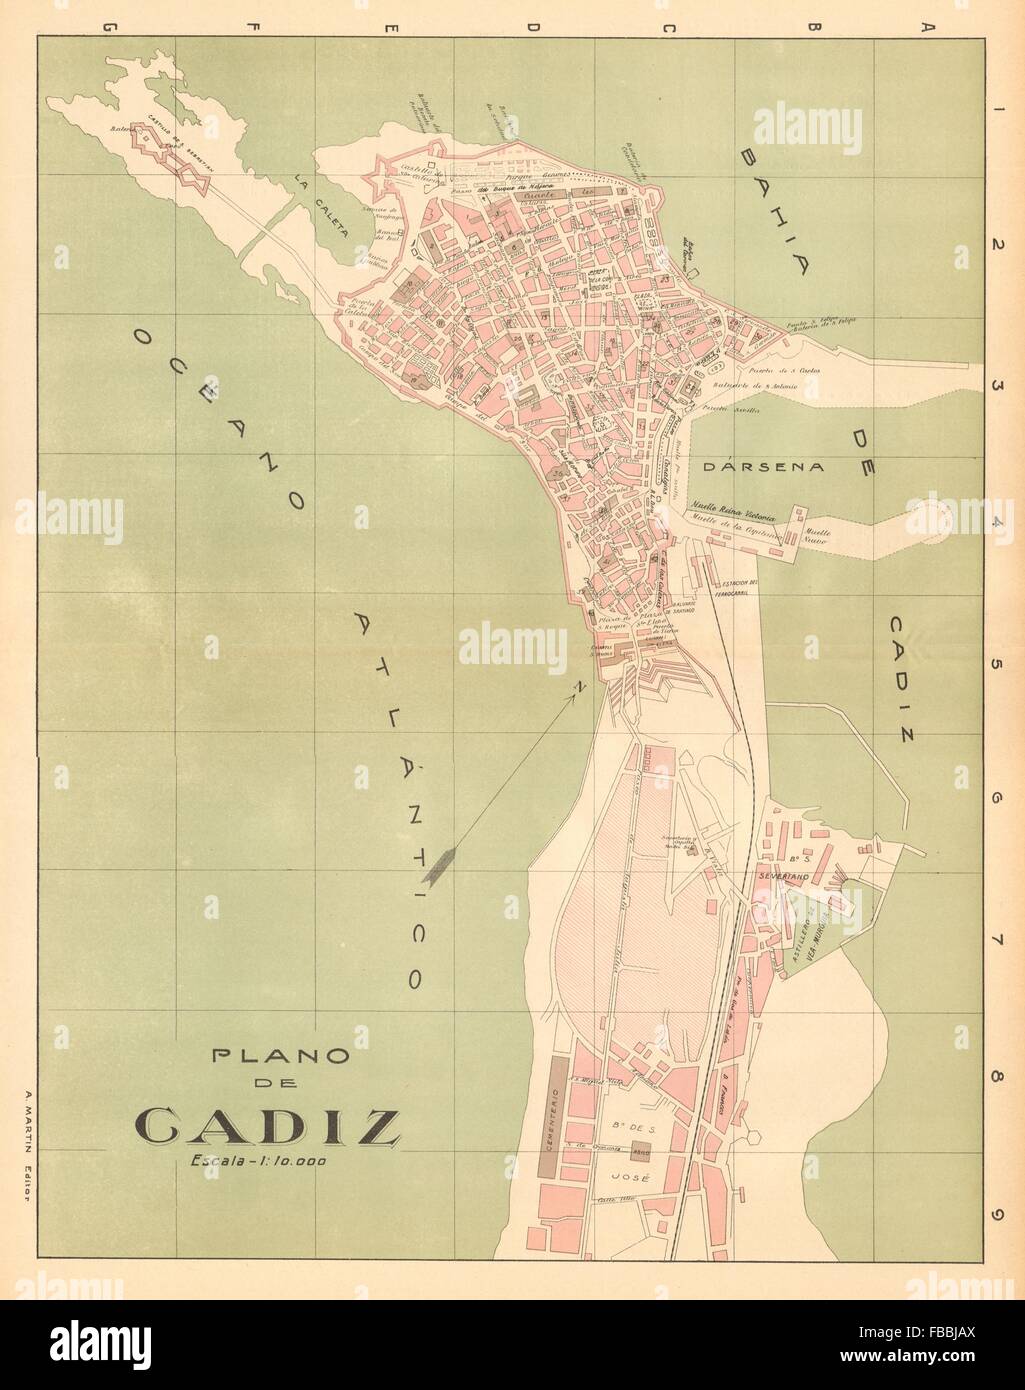 CADIZ. Plano antiguo de la cuidad. Antique town/city plan. MARTIN, c1911 map Stock Photo